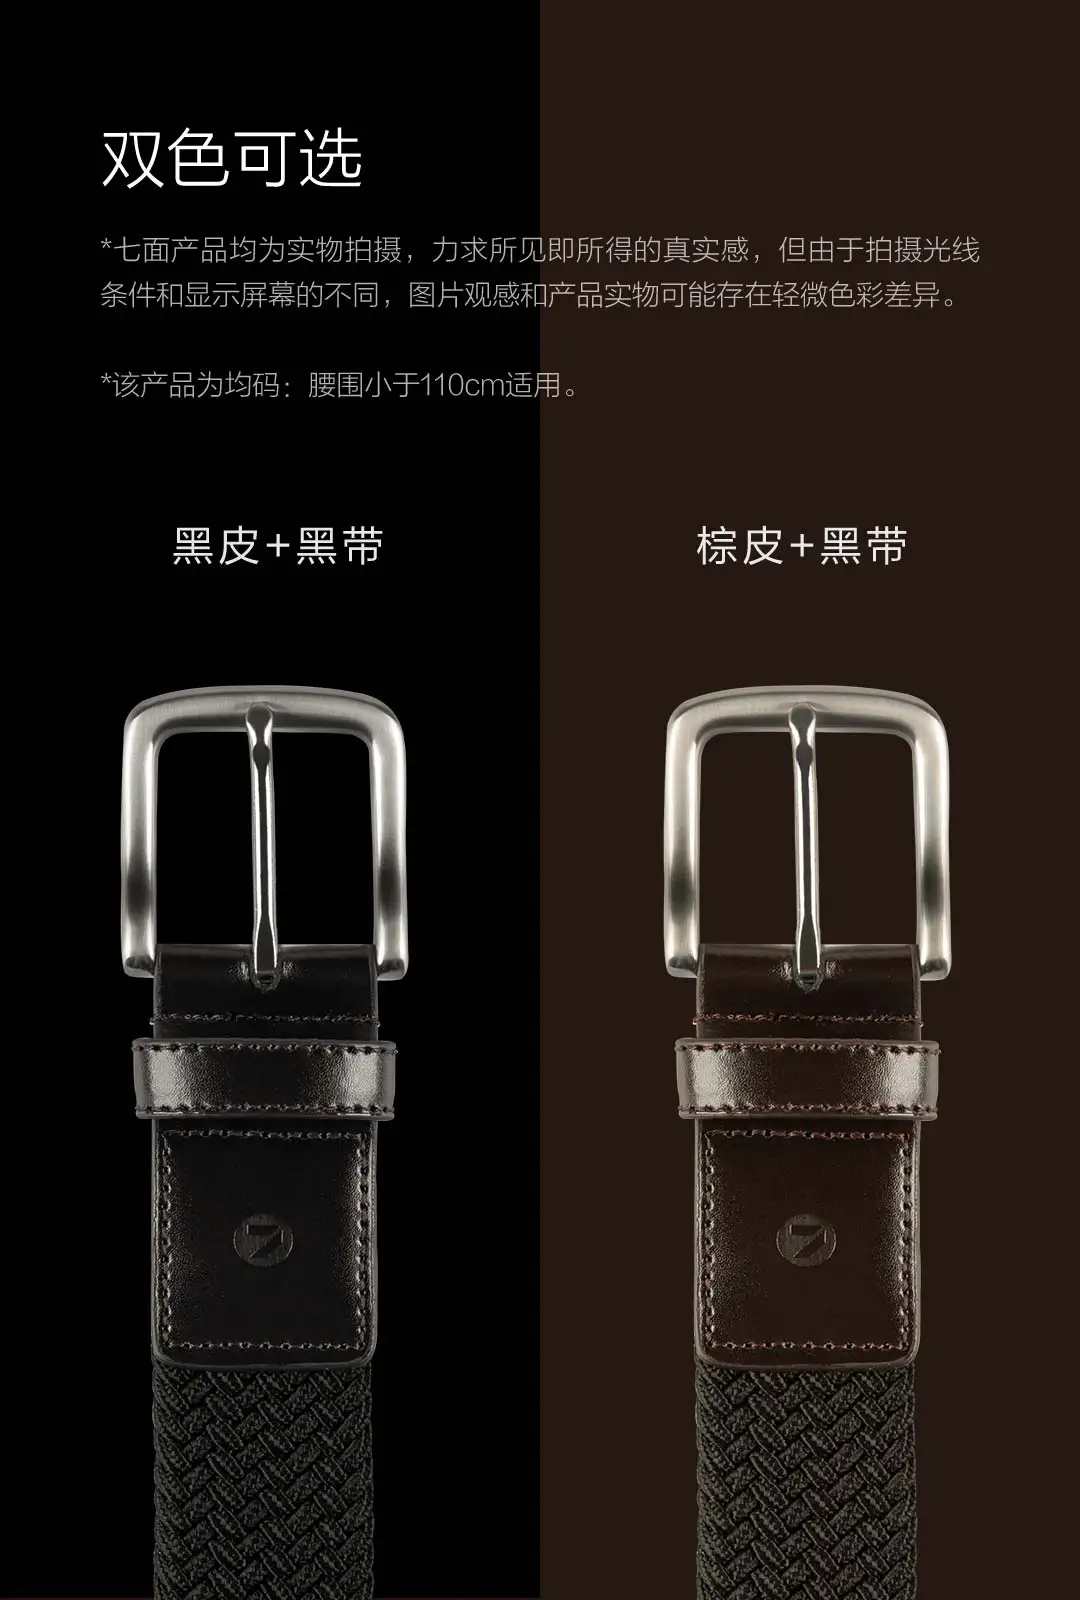 Xiaomi Youpin семисторонний эластичный ремень с пряжкой обещает регулировку высокой эластичности не легко деформируется прочный и универсальный